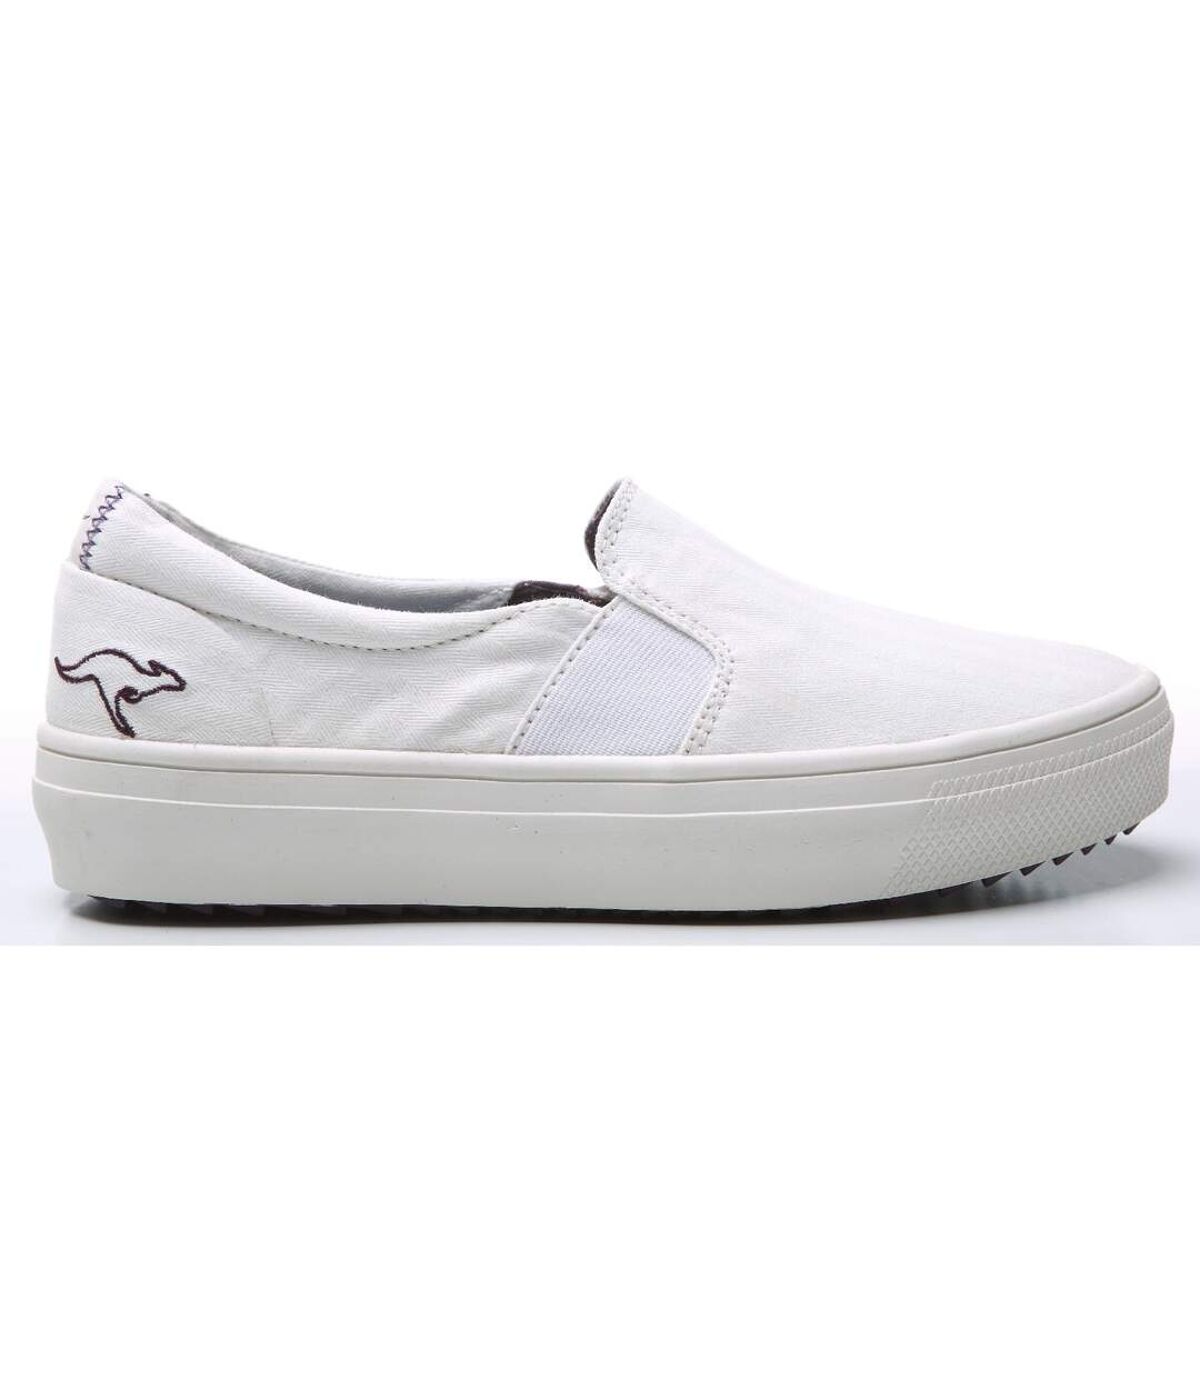 KangaRoos Womens/Ladies K-Mid Plateau 5092 Slip On Shoes (White) - UTFS3224